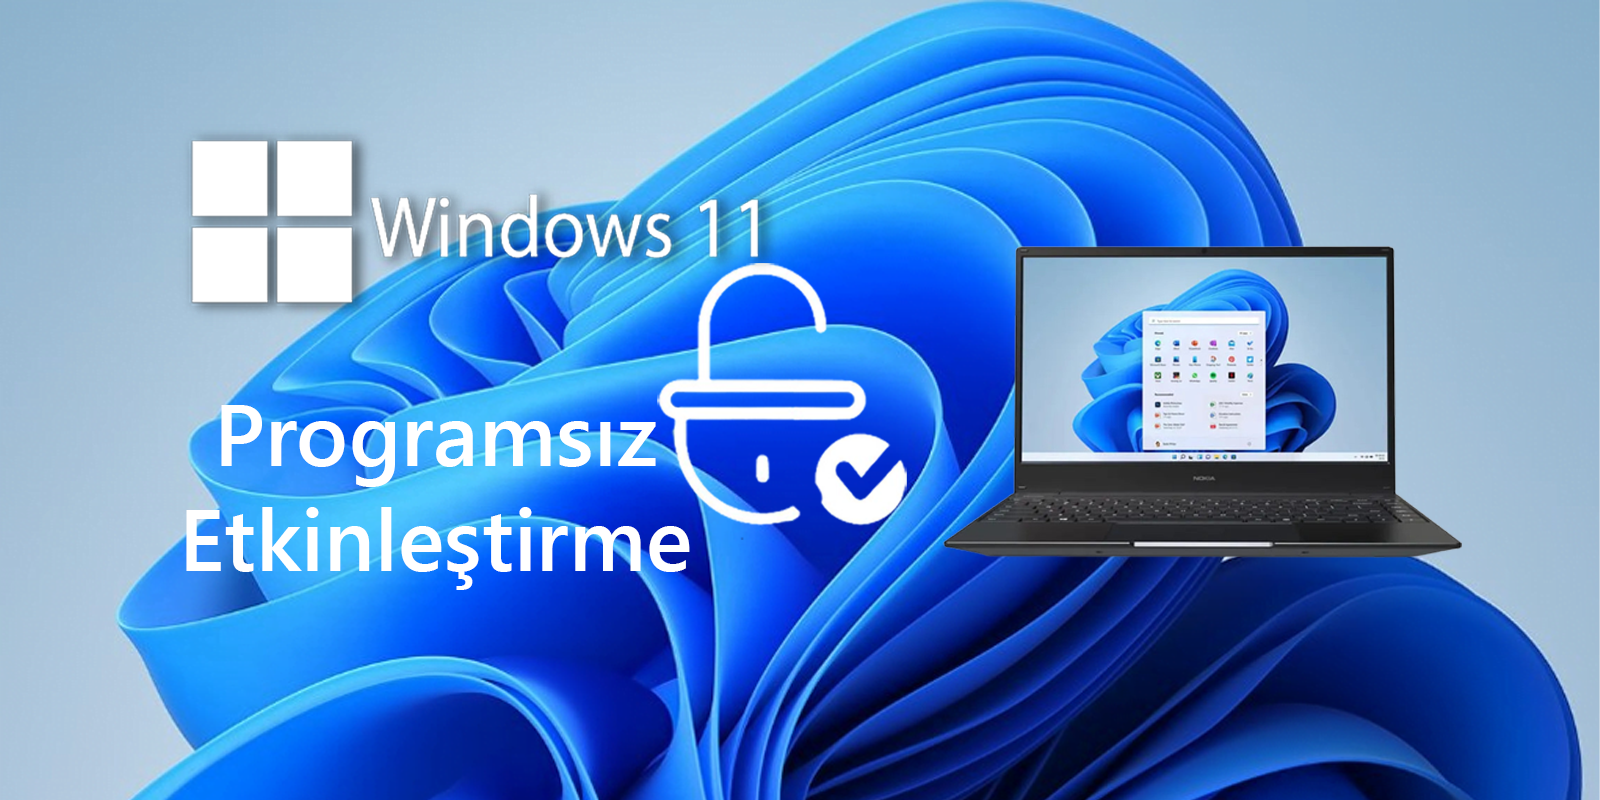 Windows 11 Programsız Etkinleştirme